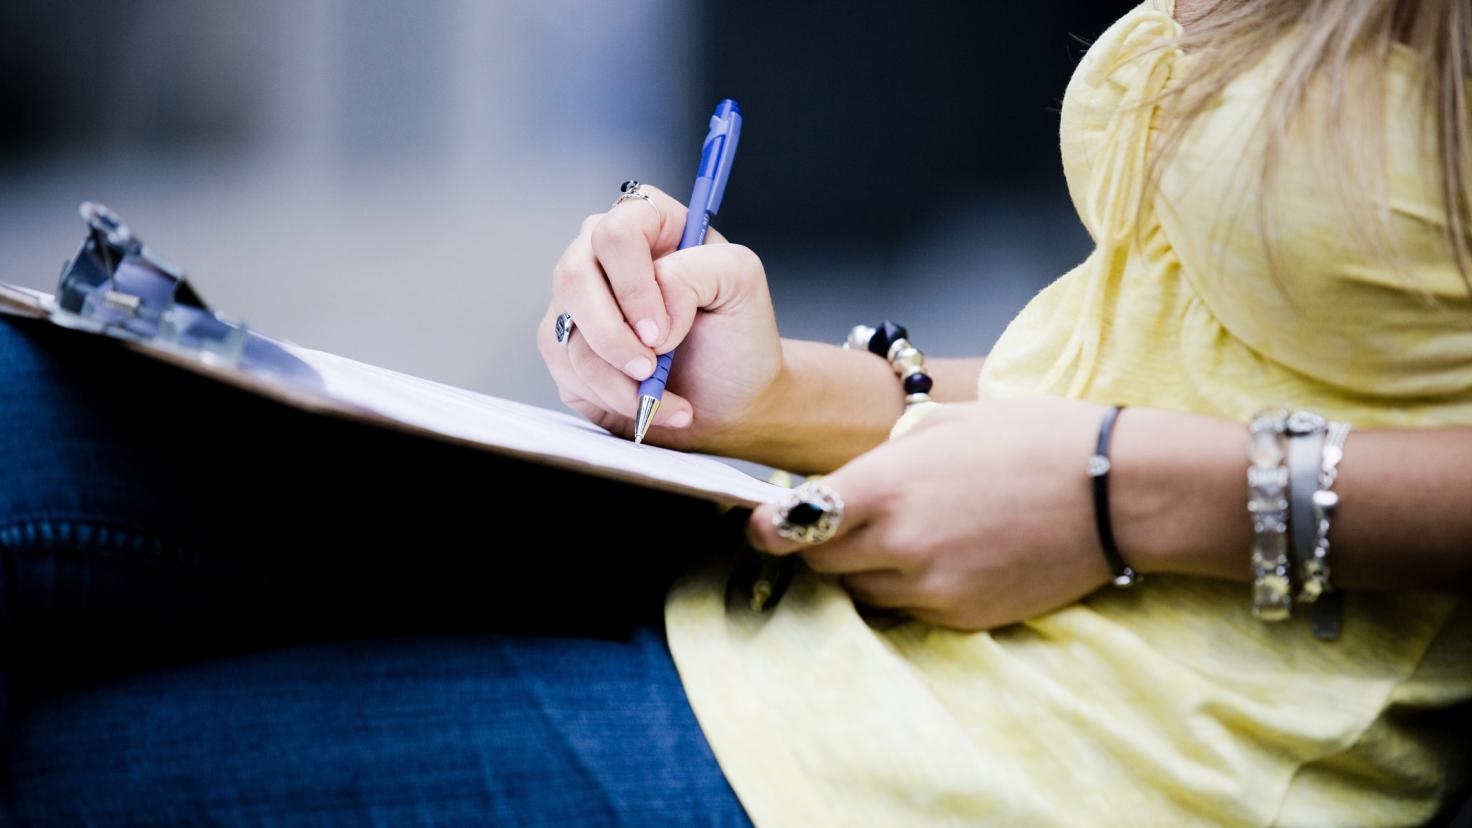 Uma mulher assina um documento em uma prancheta